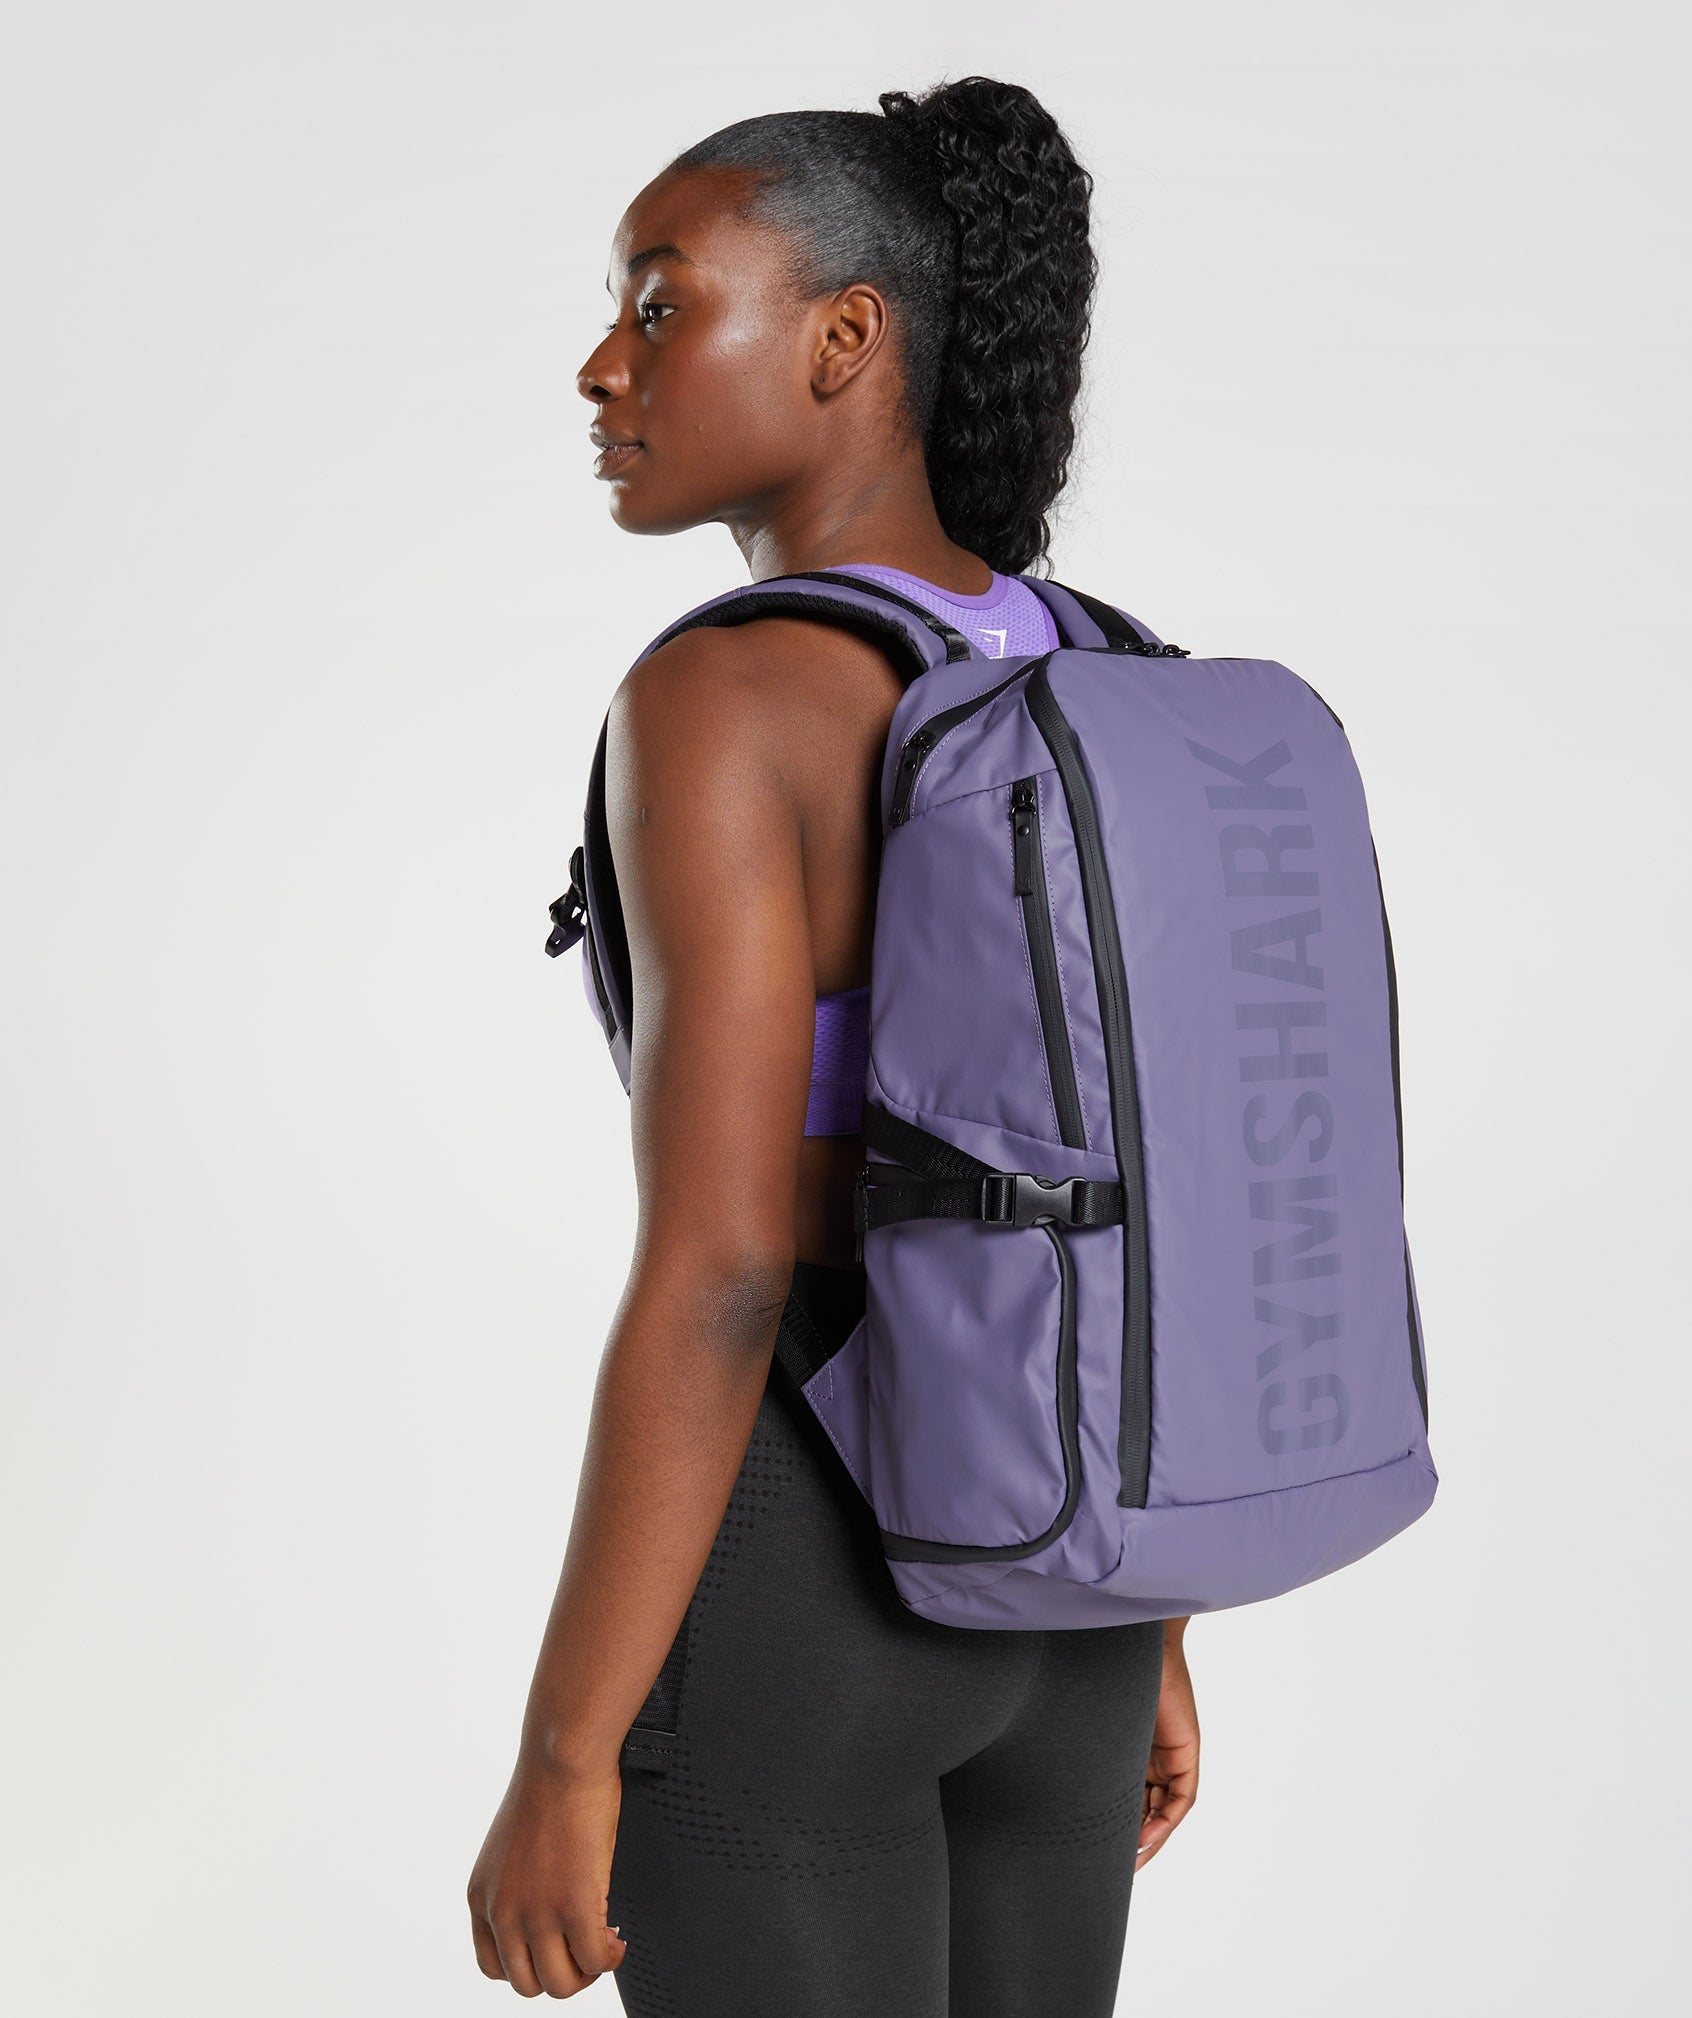 X-Series 0.3 Backpack in Mercury Purple - view 4